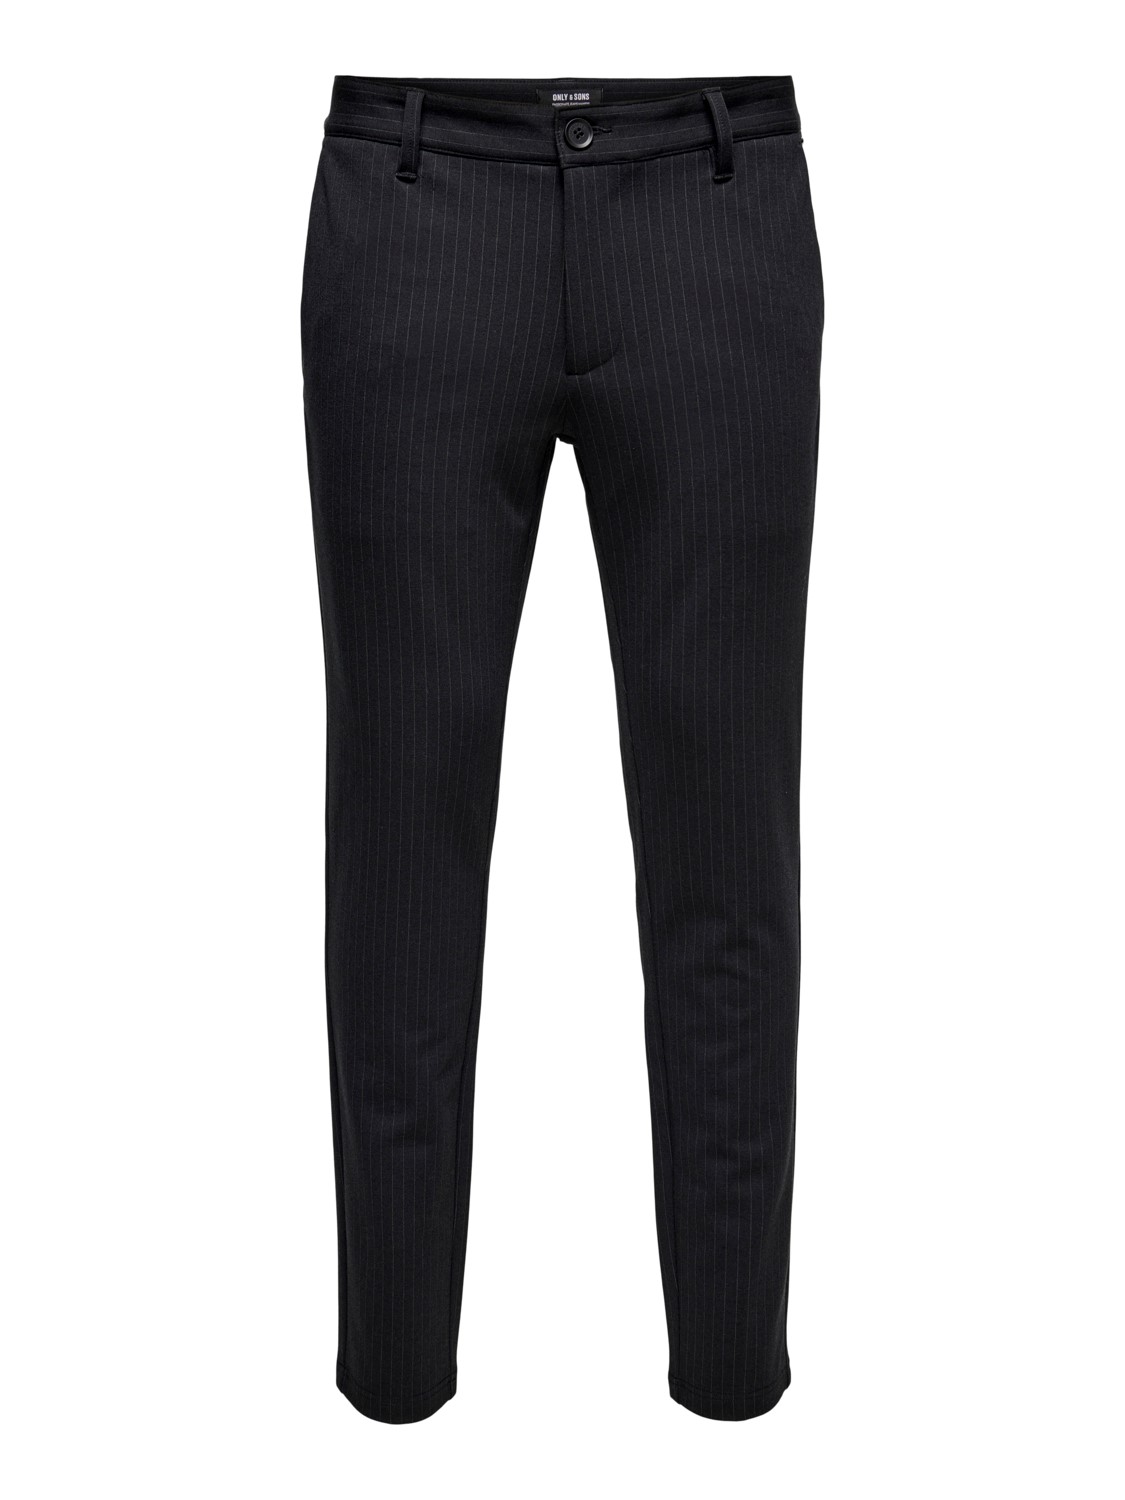 Тканевые брюки ONLY Stoff/Chino ONSMARK PANT STRIPE GW 3727 tapered, черный брюки onsmark pant only